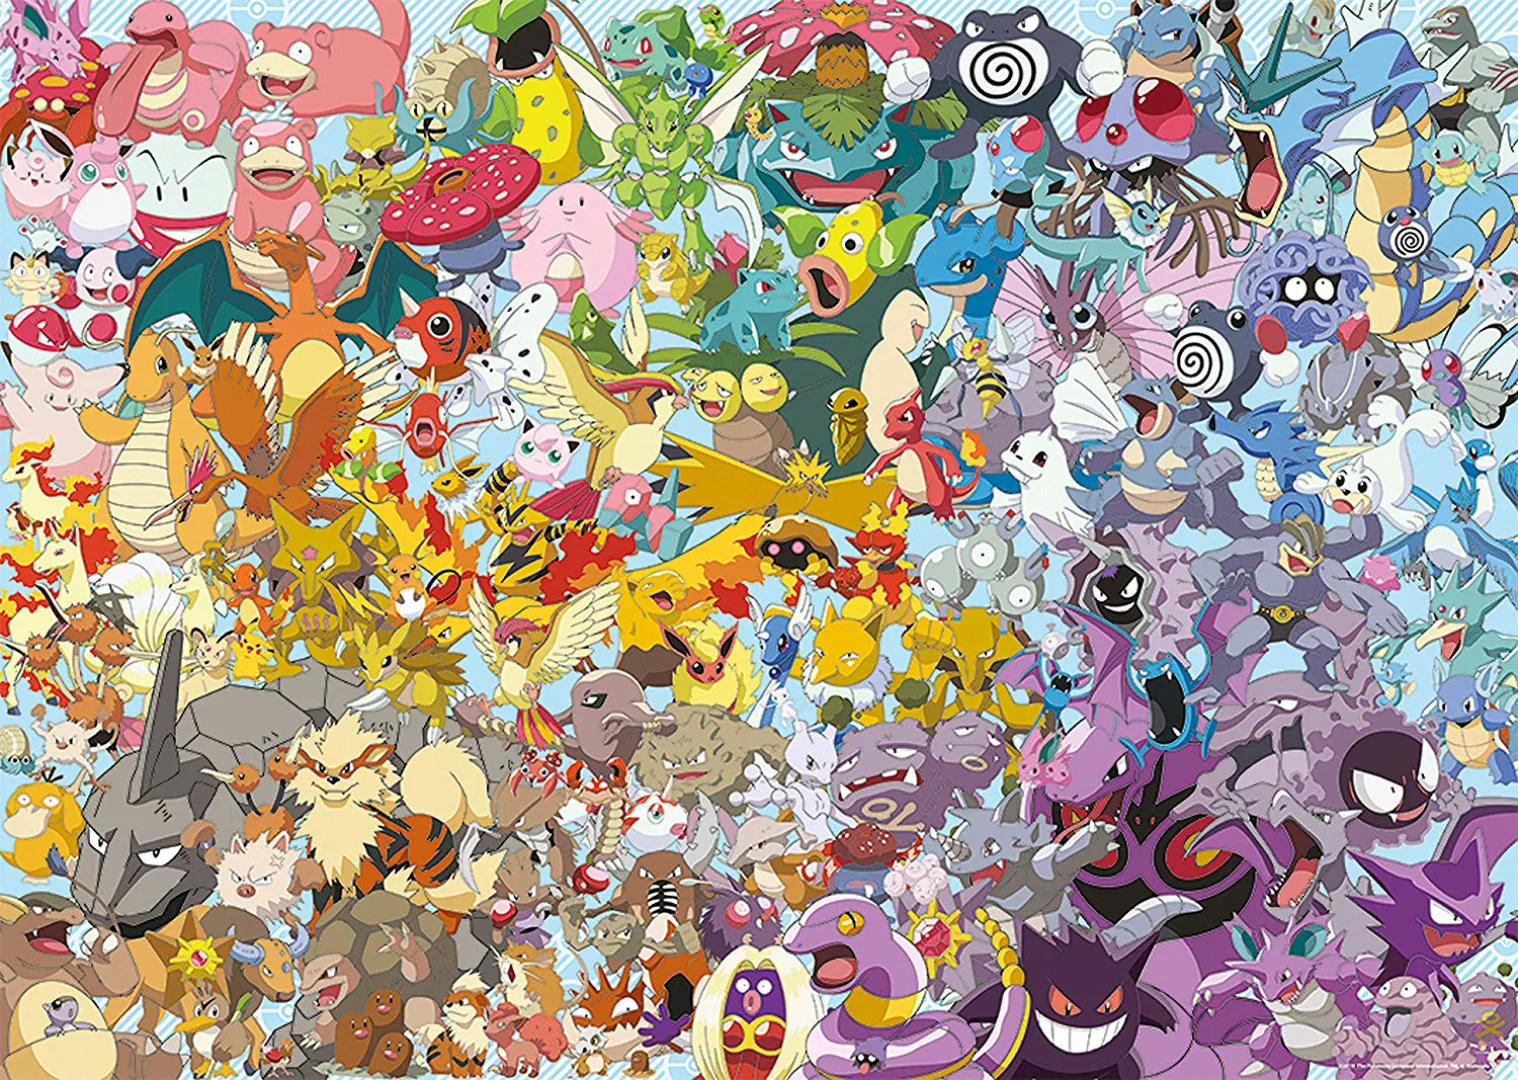 Pokémon - Puzzle 1000 Teile günstig online kaufen